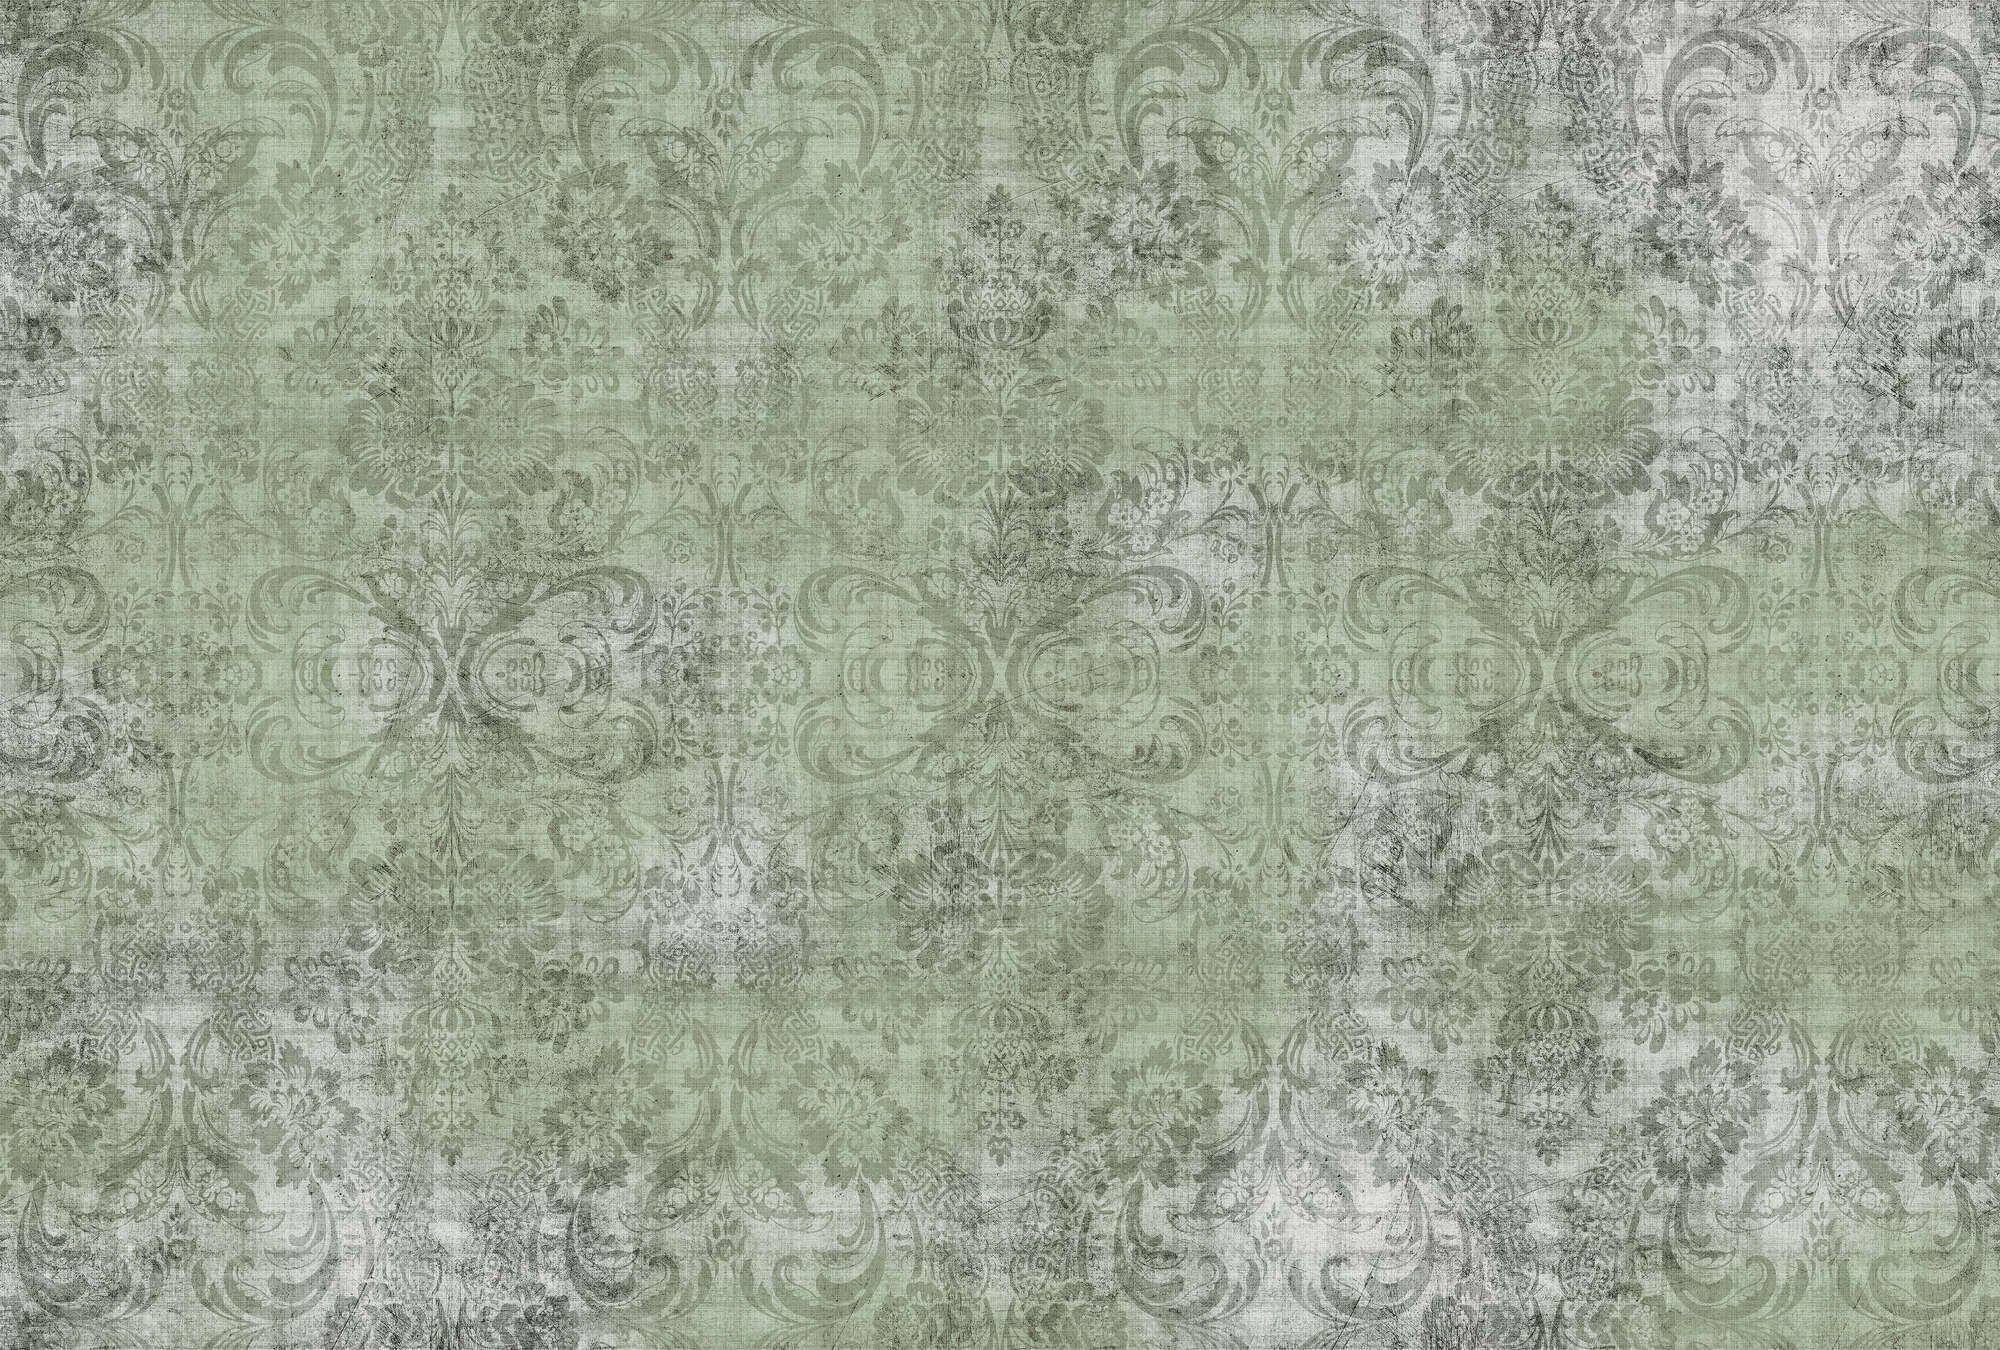             Oud damast 2 - Ornamenten op groen-motief fotobehang- Natuurlijke linnenstructuur - Groen | Parelglad vlies
        